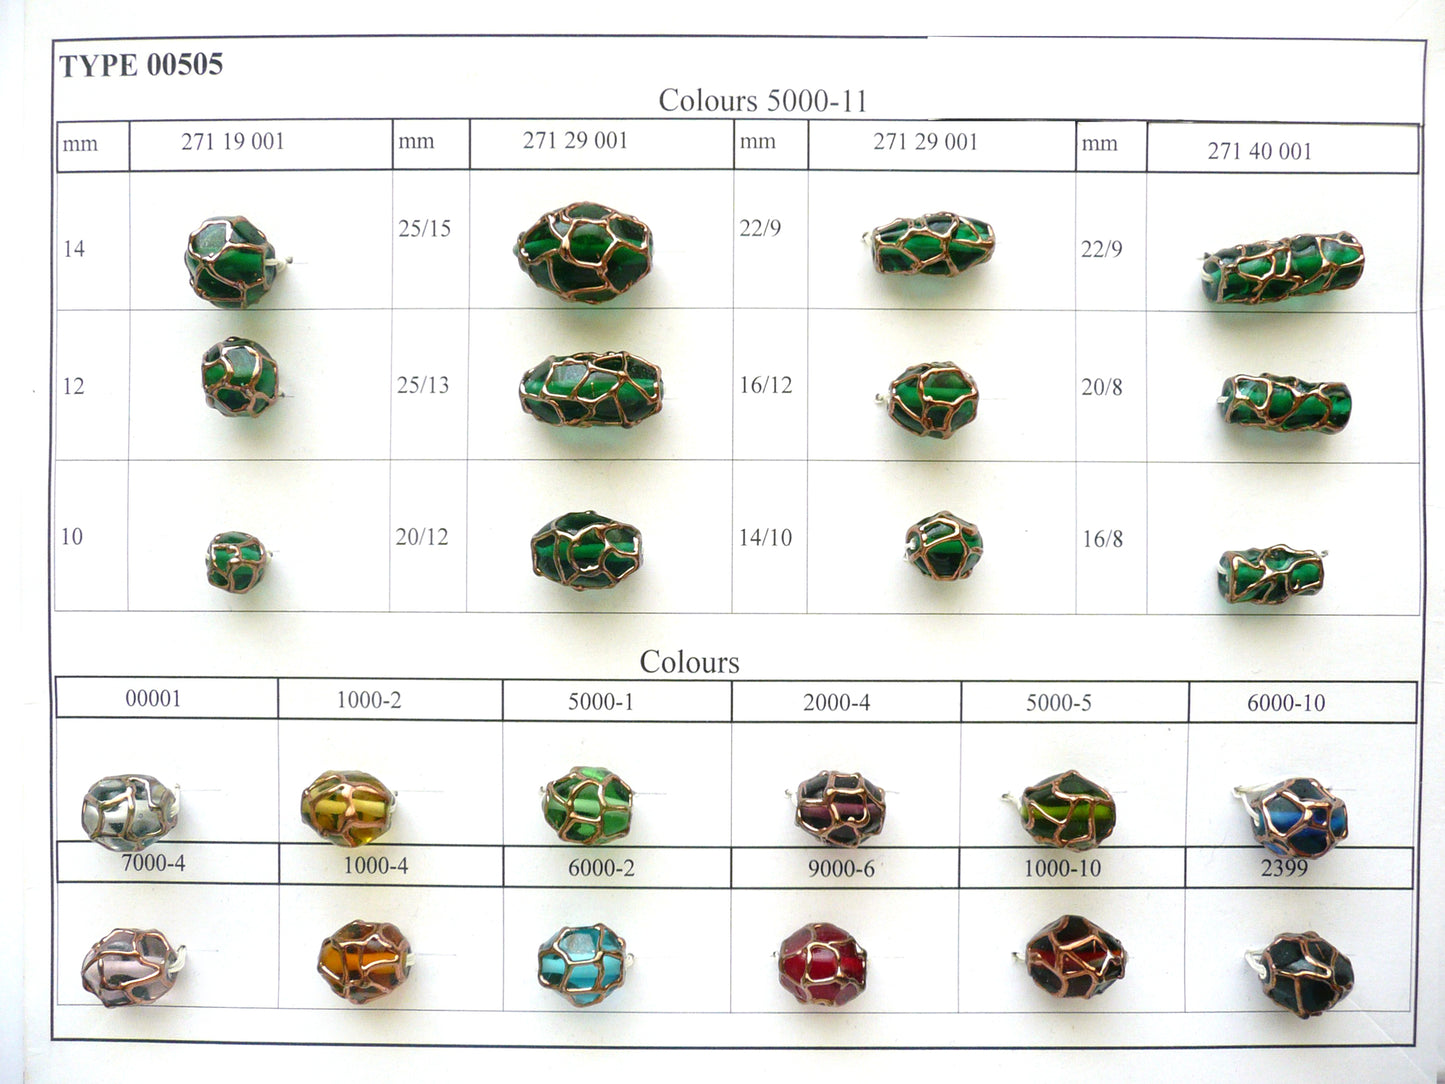 30 Stück Lampwork-Perlen 505 / Rund (271-19-001), handgefertigt, Preciosa-Glas, Tschechische Republik